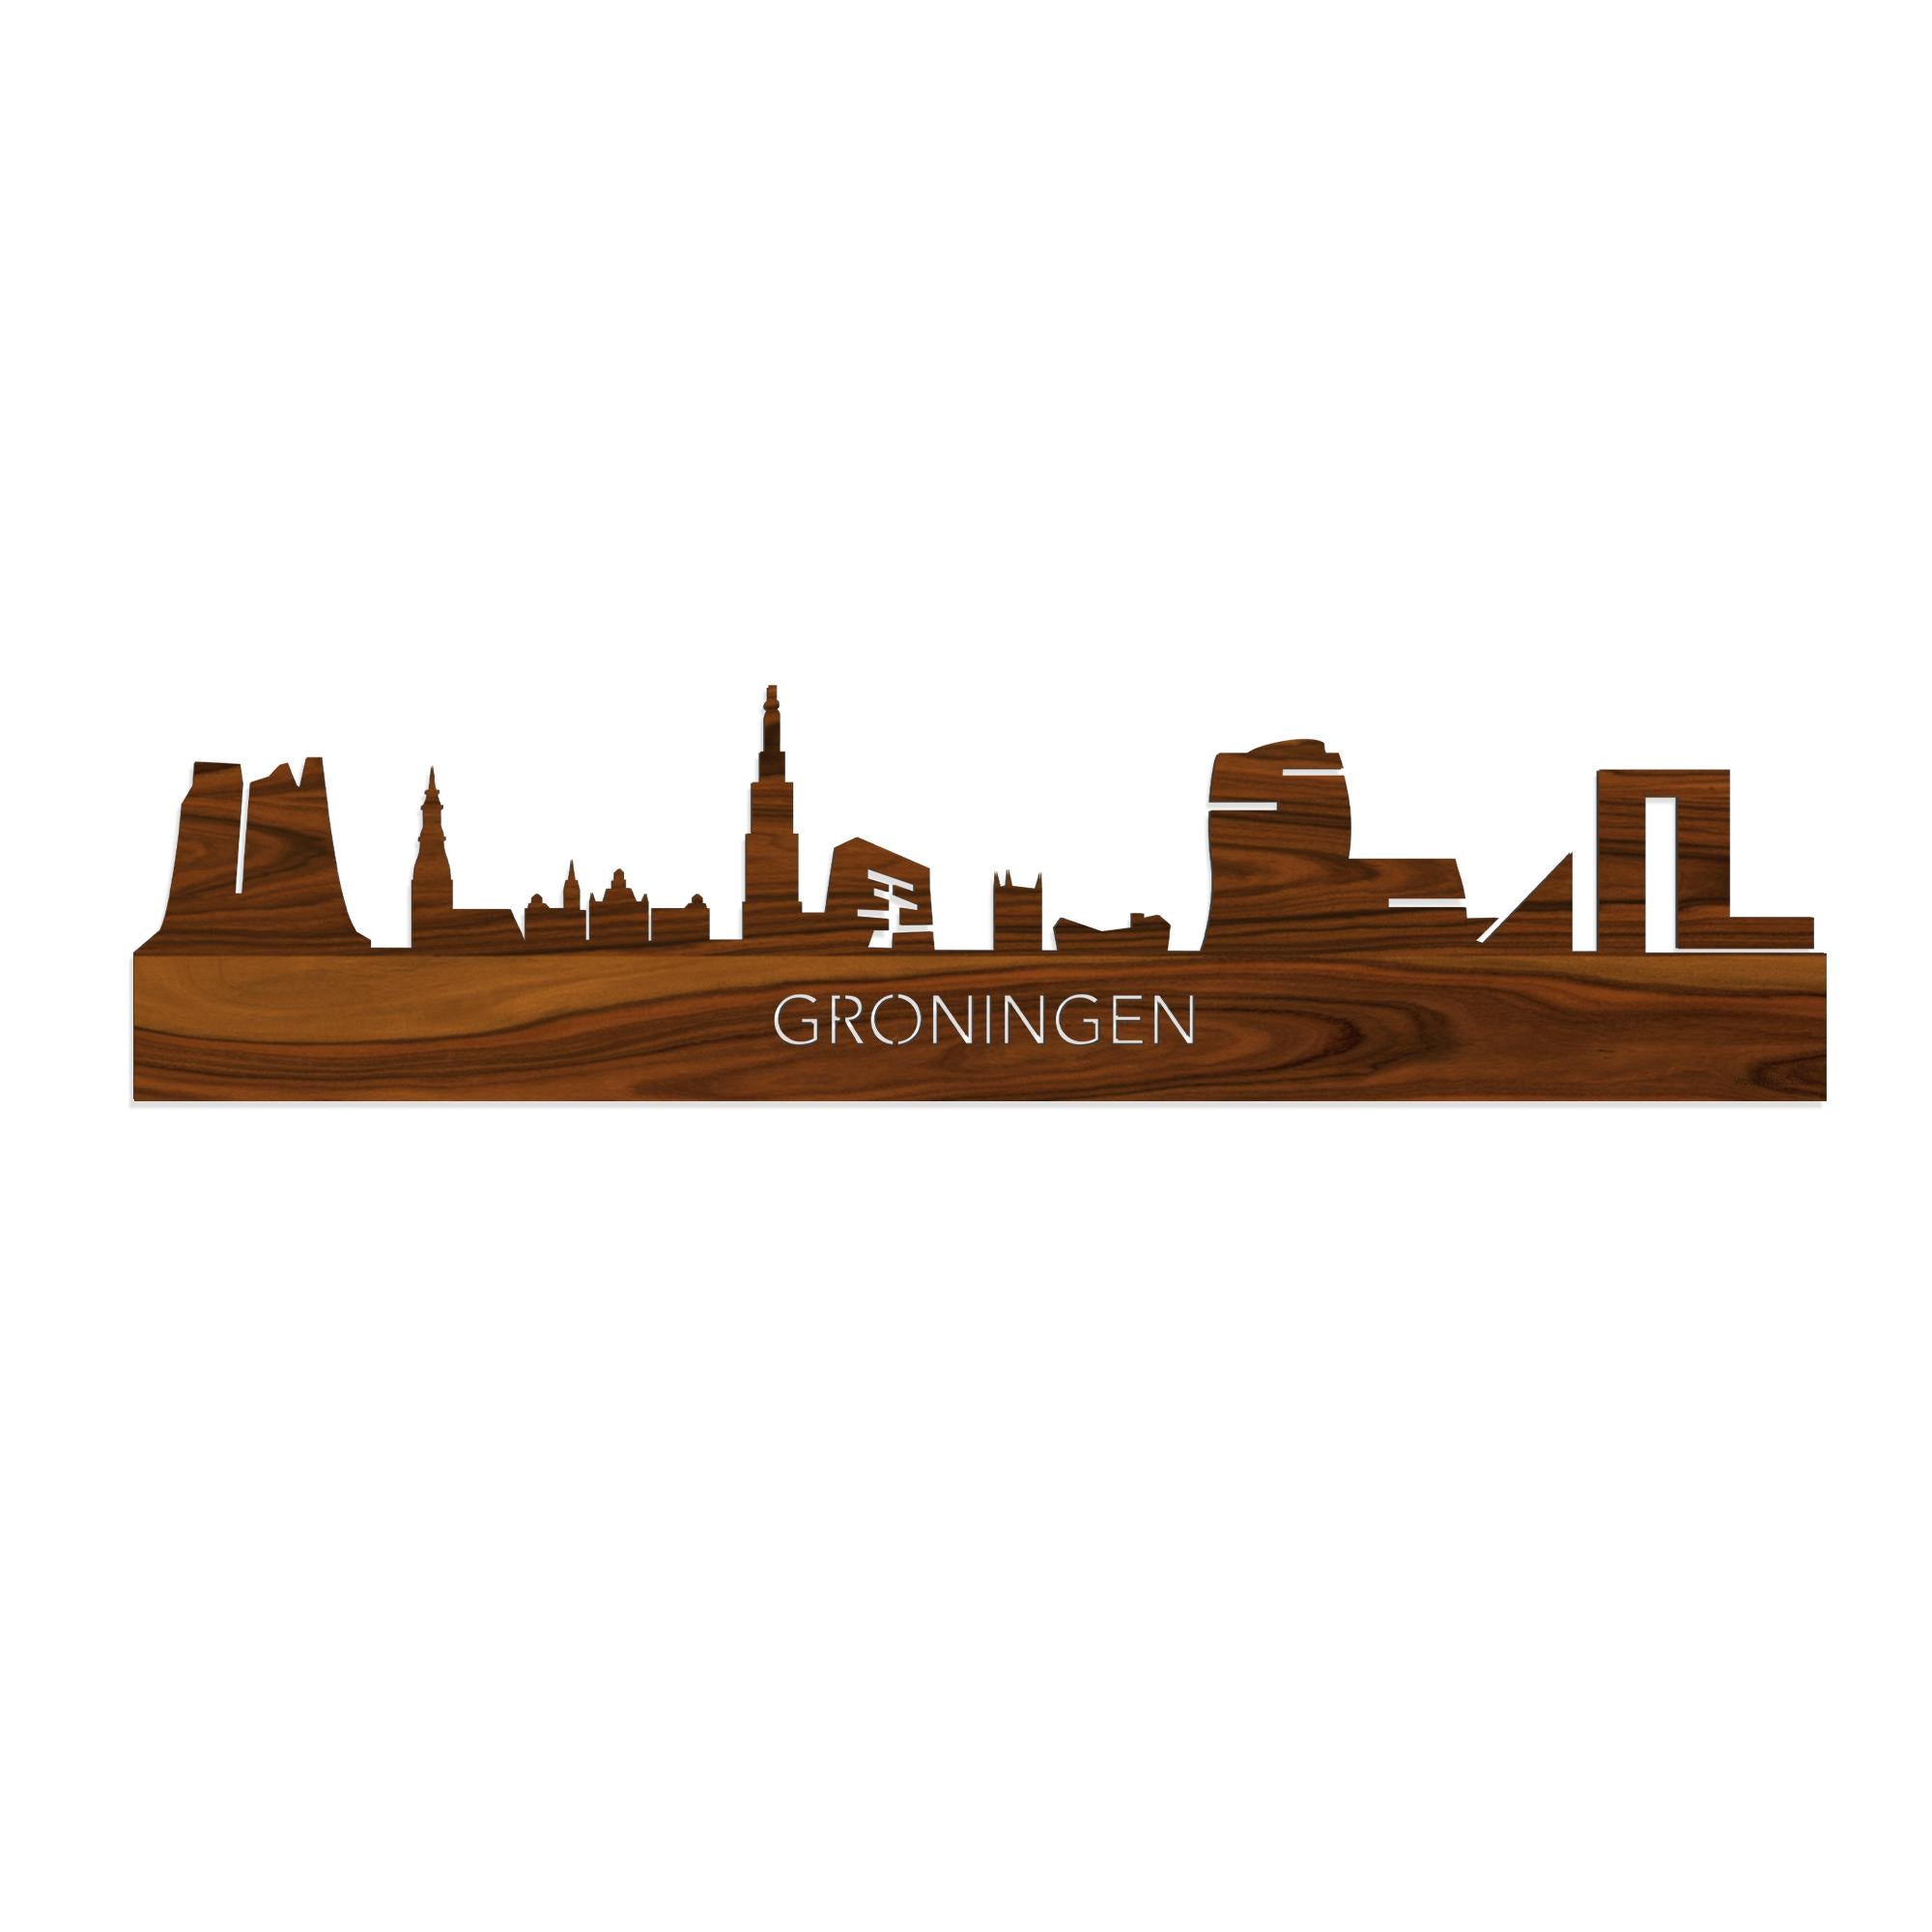 Skyline Groningen Palissander houten cadeau decoratie relatiegeschenk van WoodWideCities